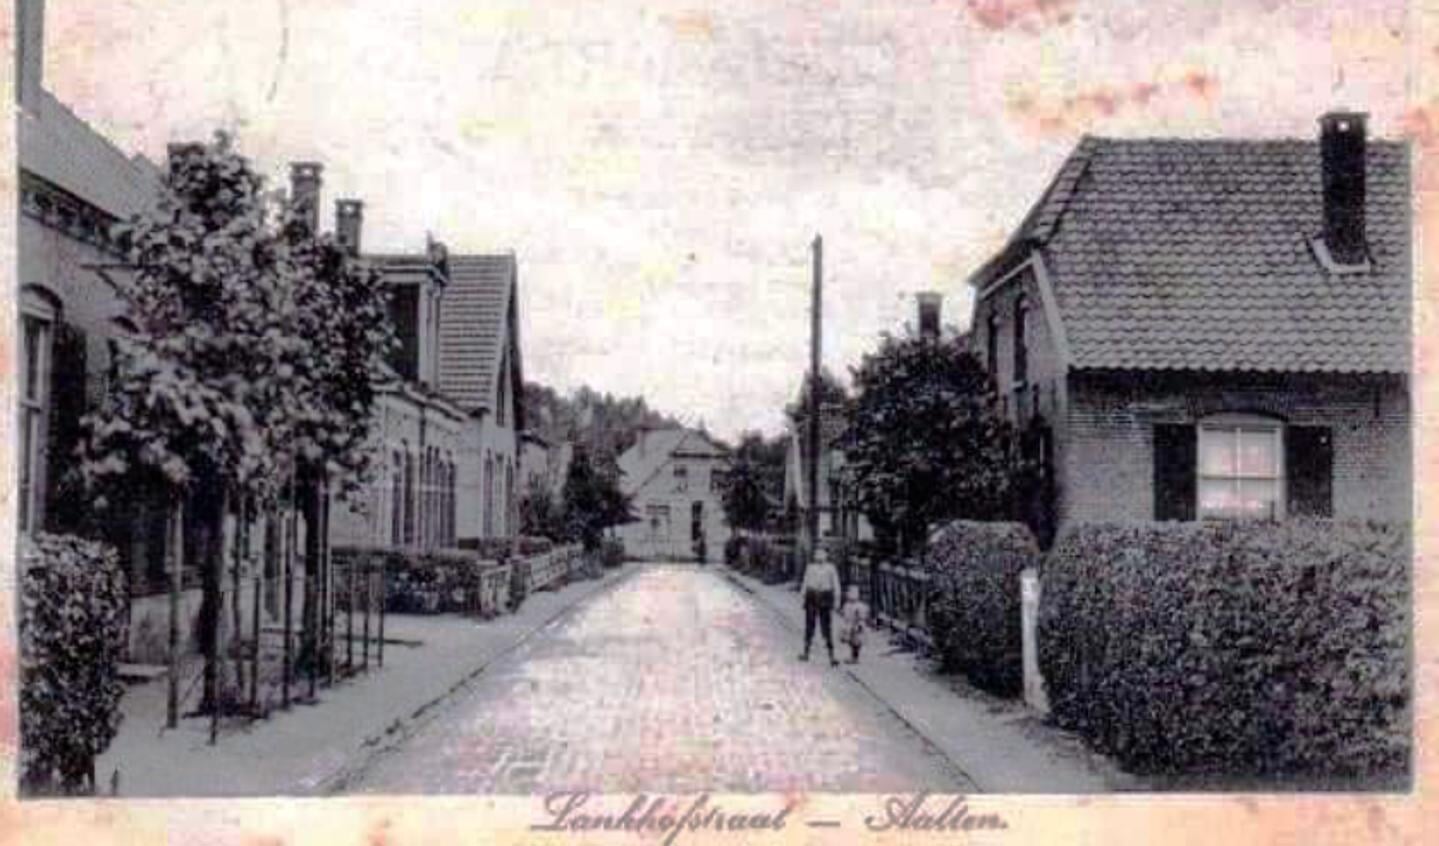 Zoekplaatje, Lankhofstraat, circa 1925. Foto: collectie Leo van der Linde